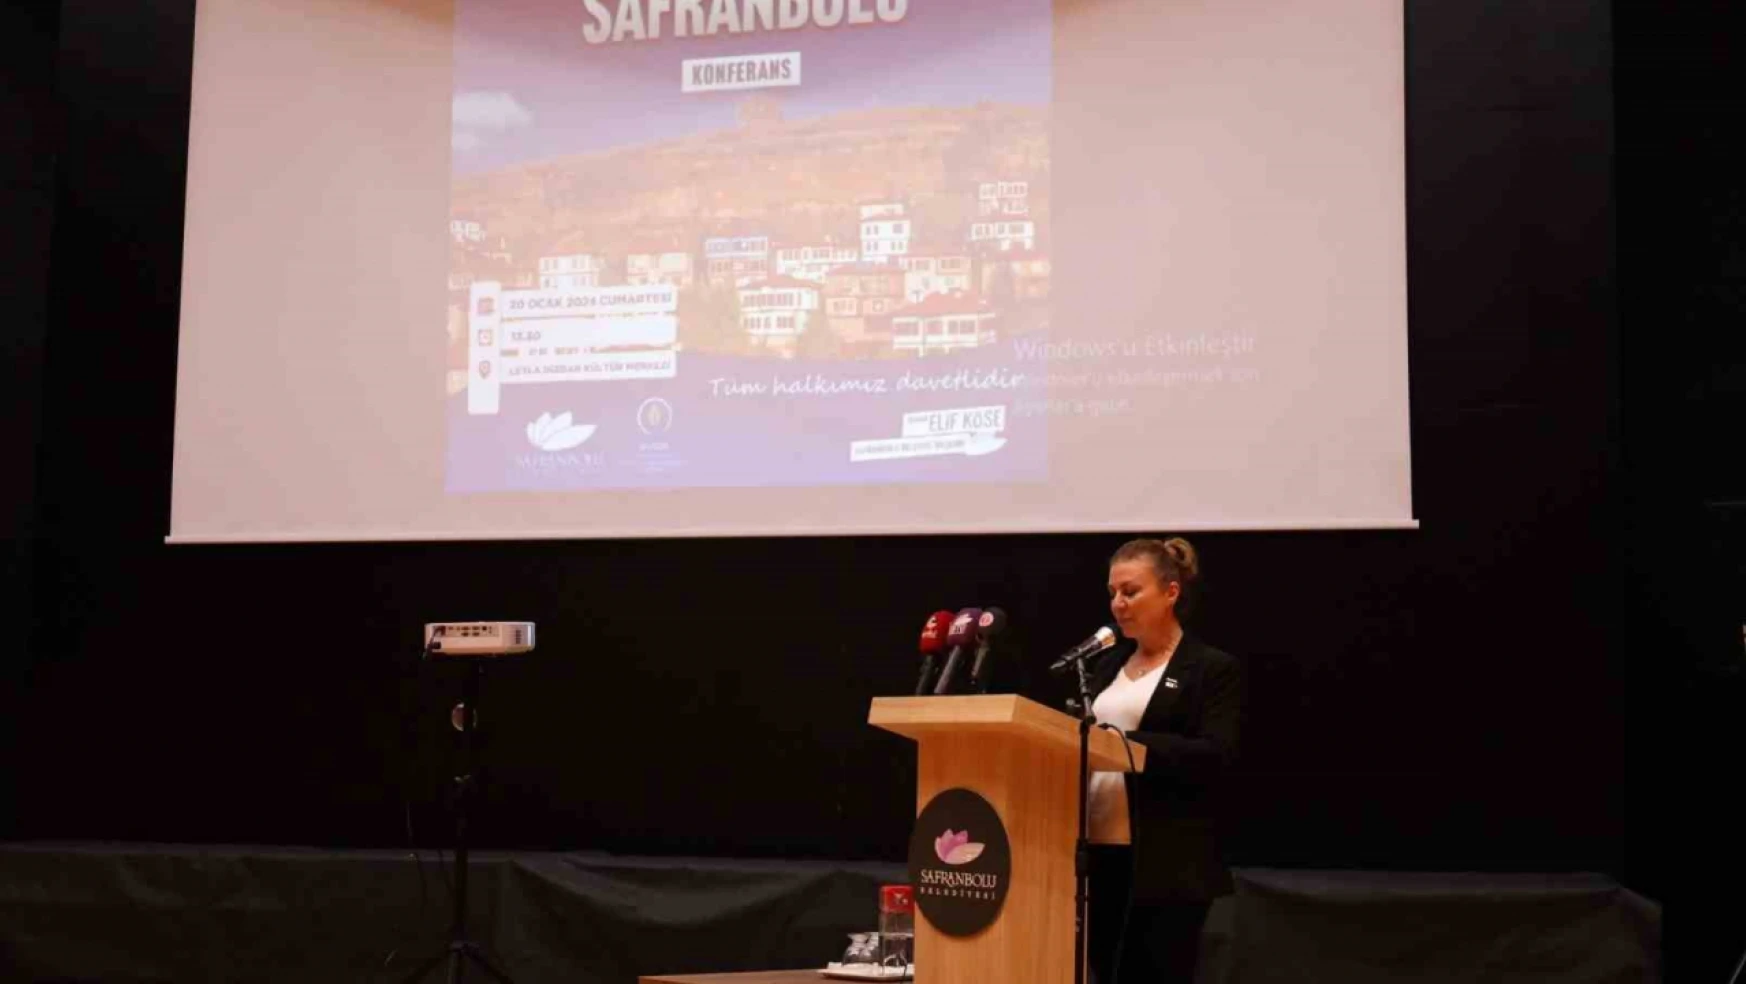 Yenilikçi Kent Safranbolu Konferansı yapıldı